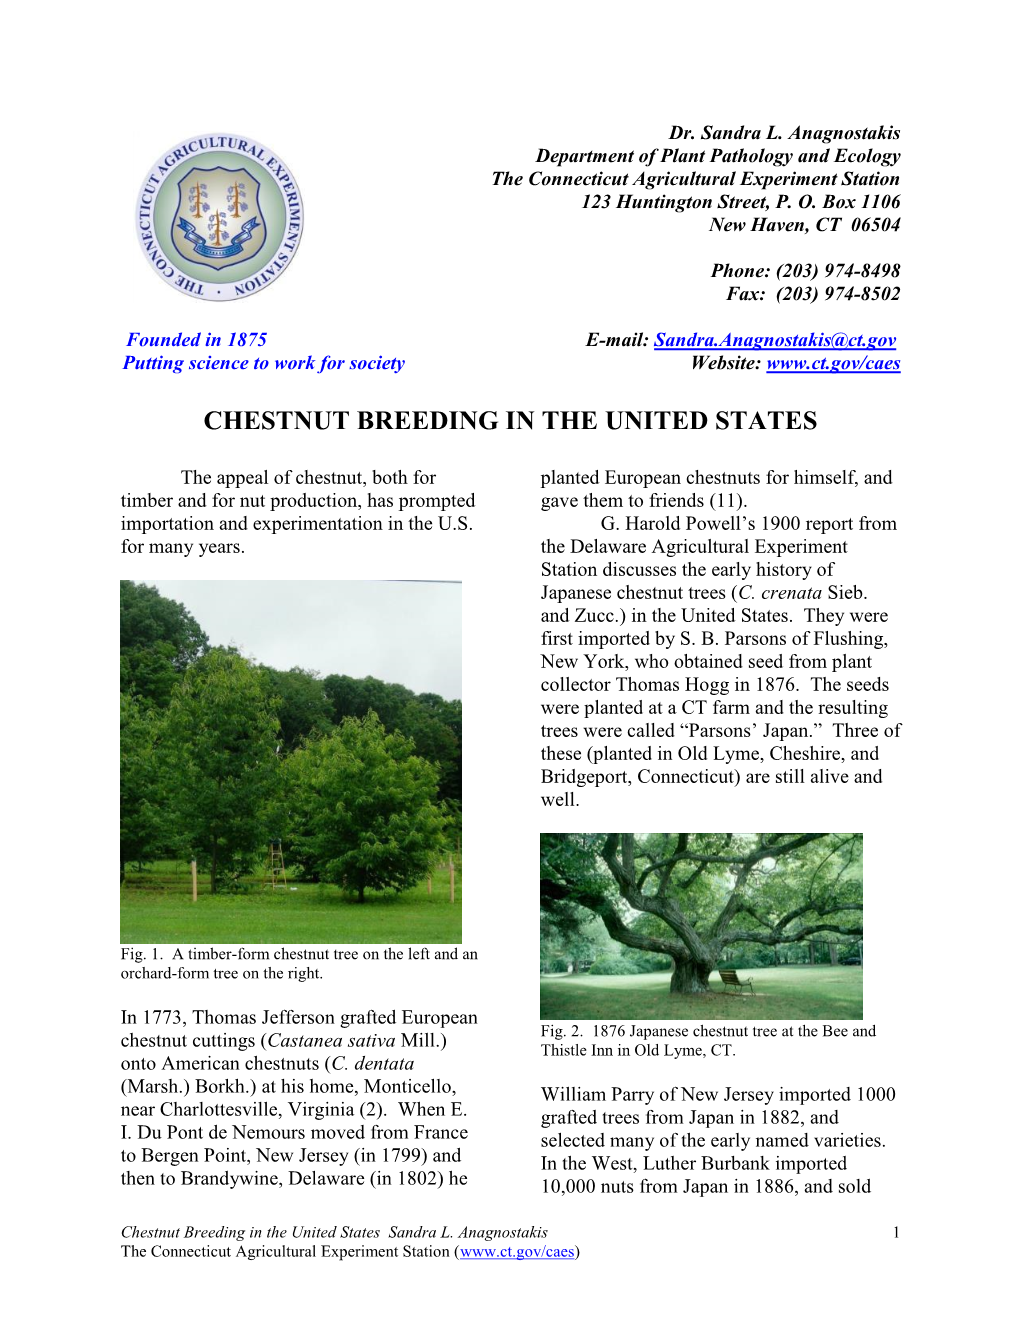 Chestnut Breeding in the United States